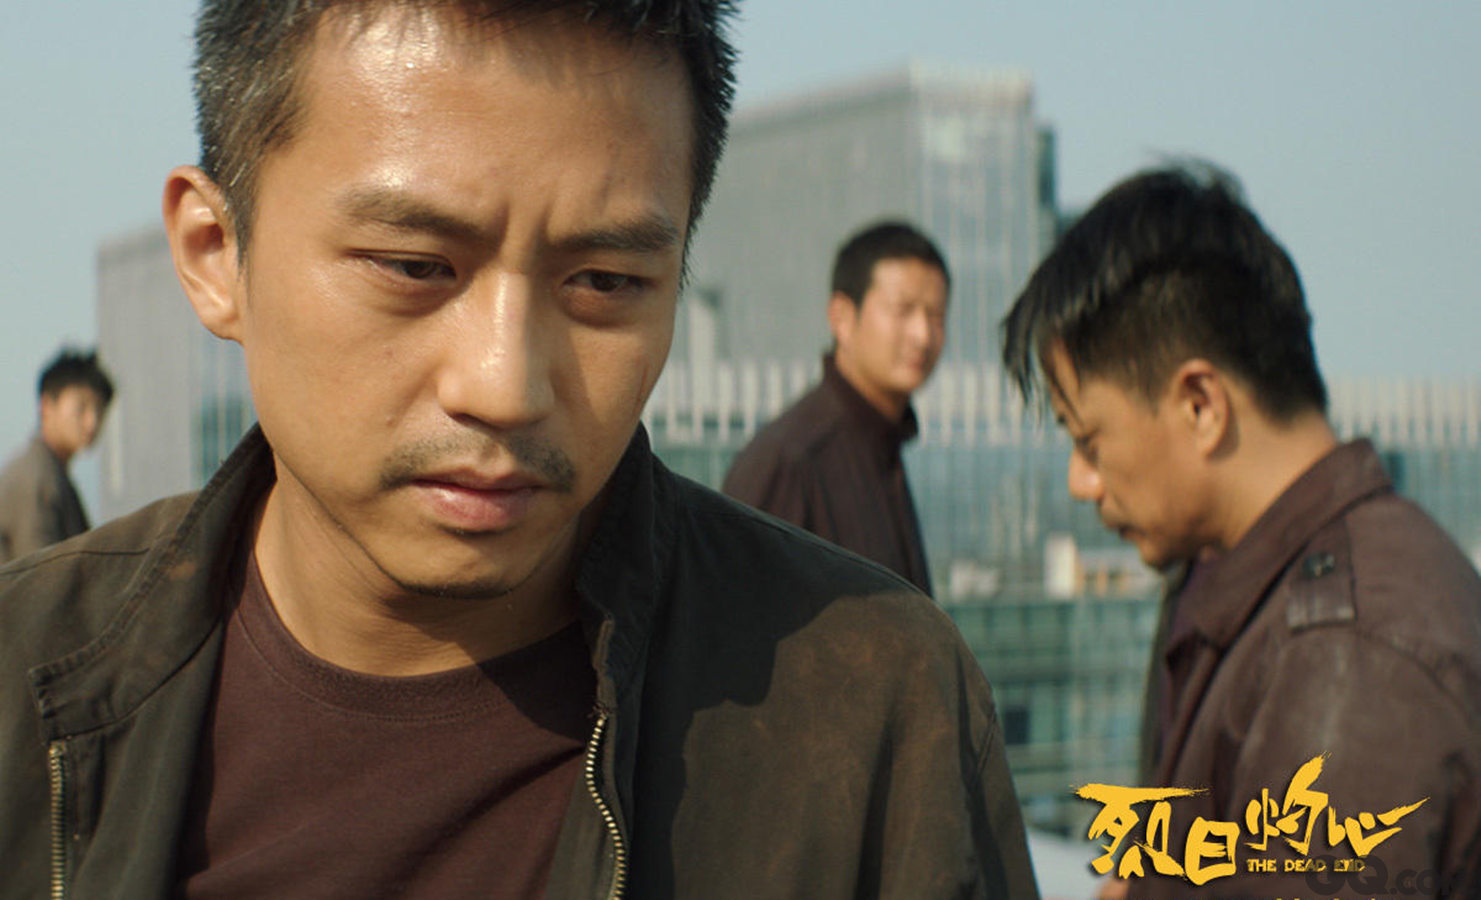 《烈日灼心》已经帮邓超在上海电影节斩获一座影帝奖杯（虽然是三黄蛋！），在金马是否还能获得肯定，要看几位的实力角逐结果了；